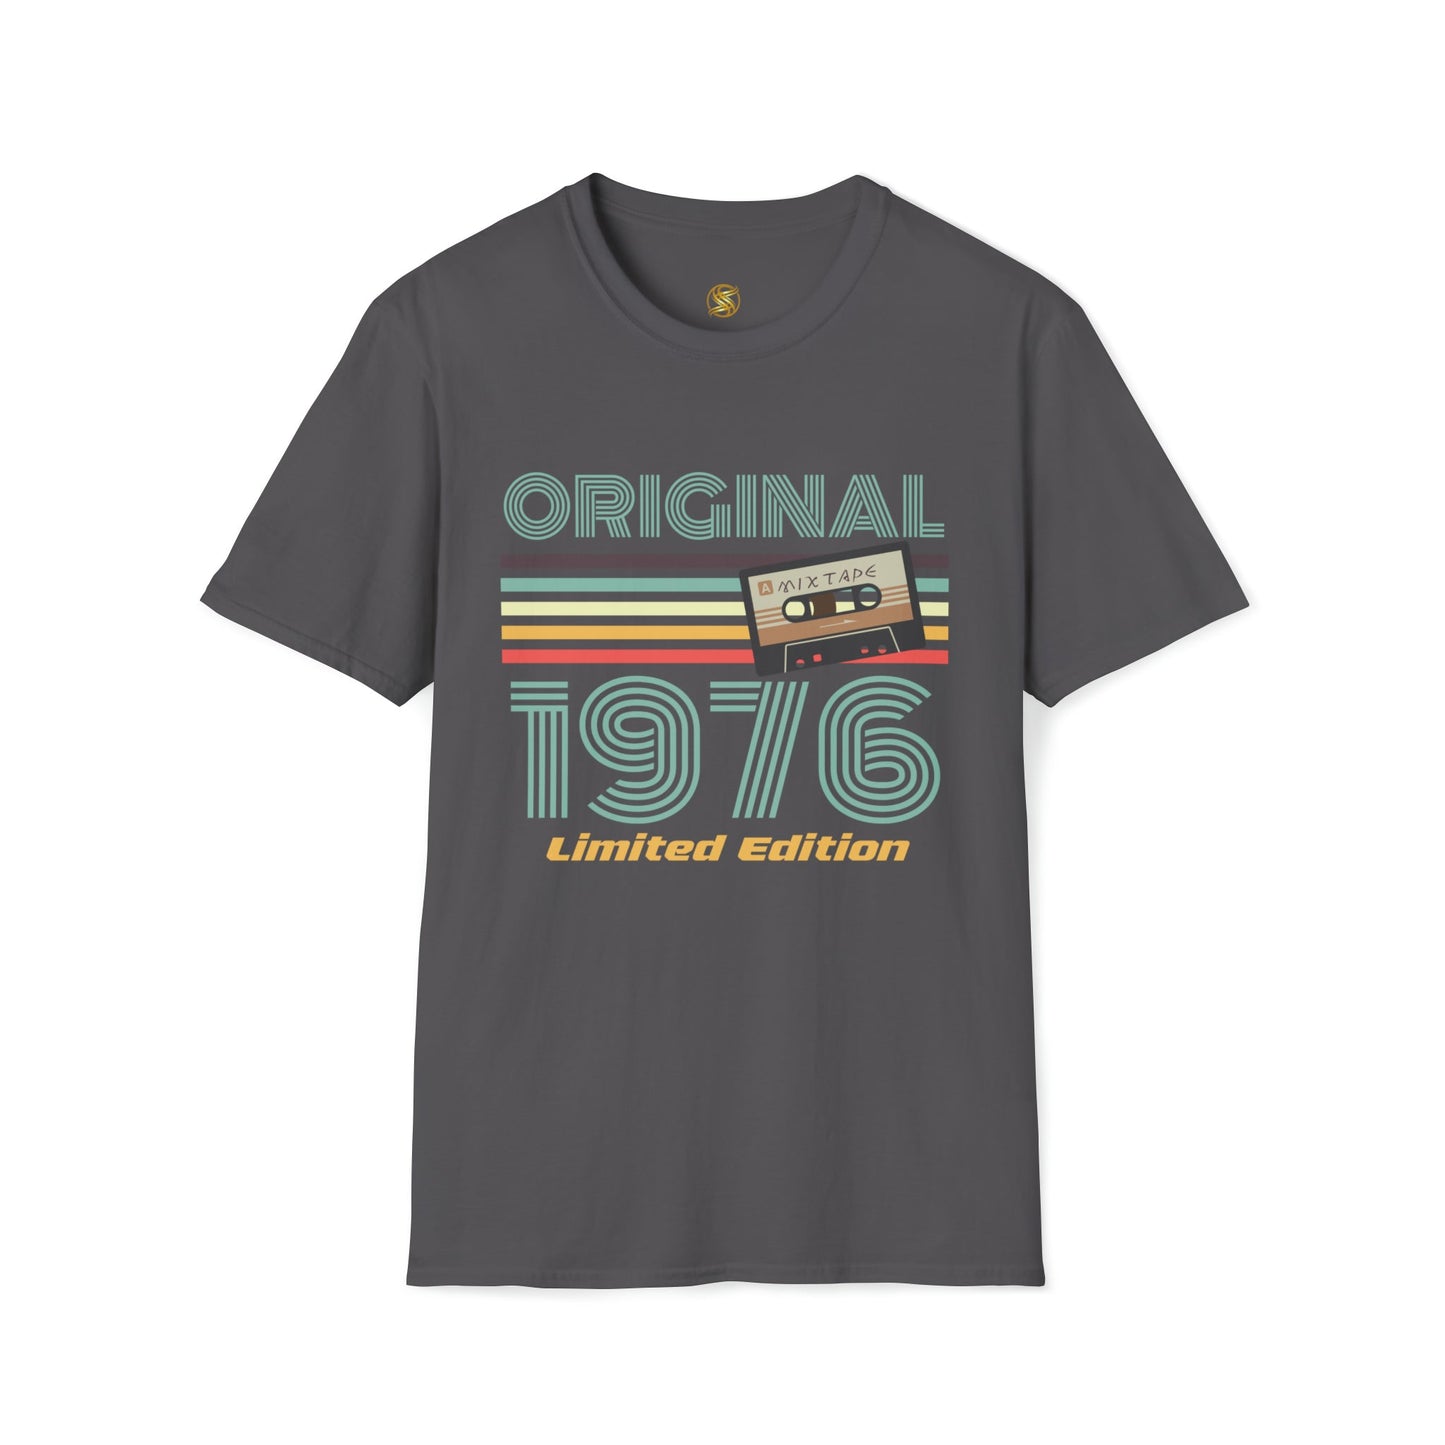 Retro 80er Design Unisex T-Shirt mit Original 1976 Aufdruck - Ultimativer Komfort trifft Vintage-Stil